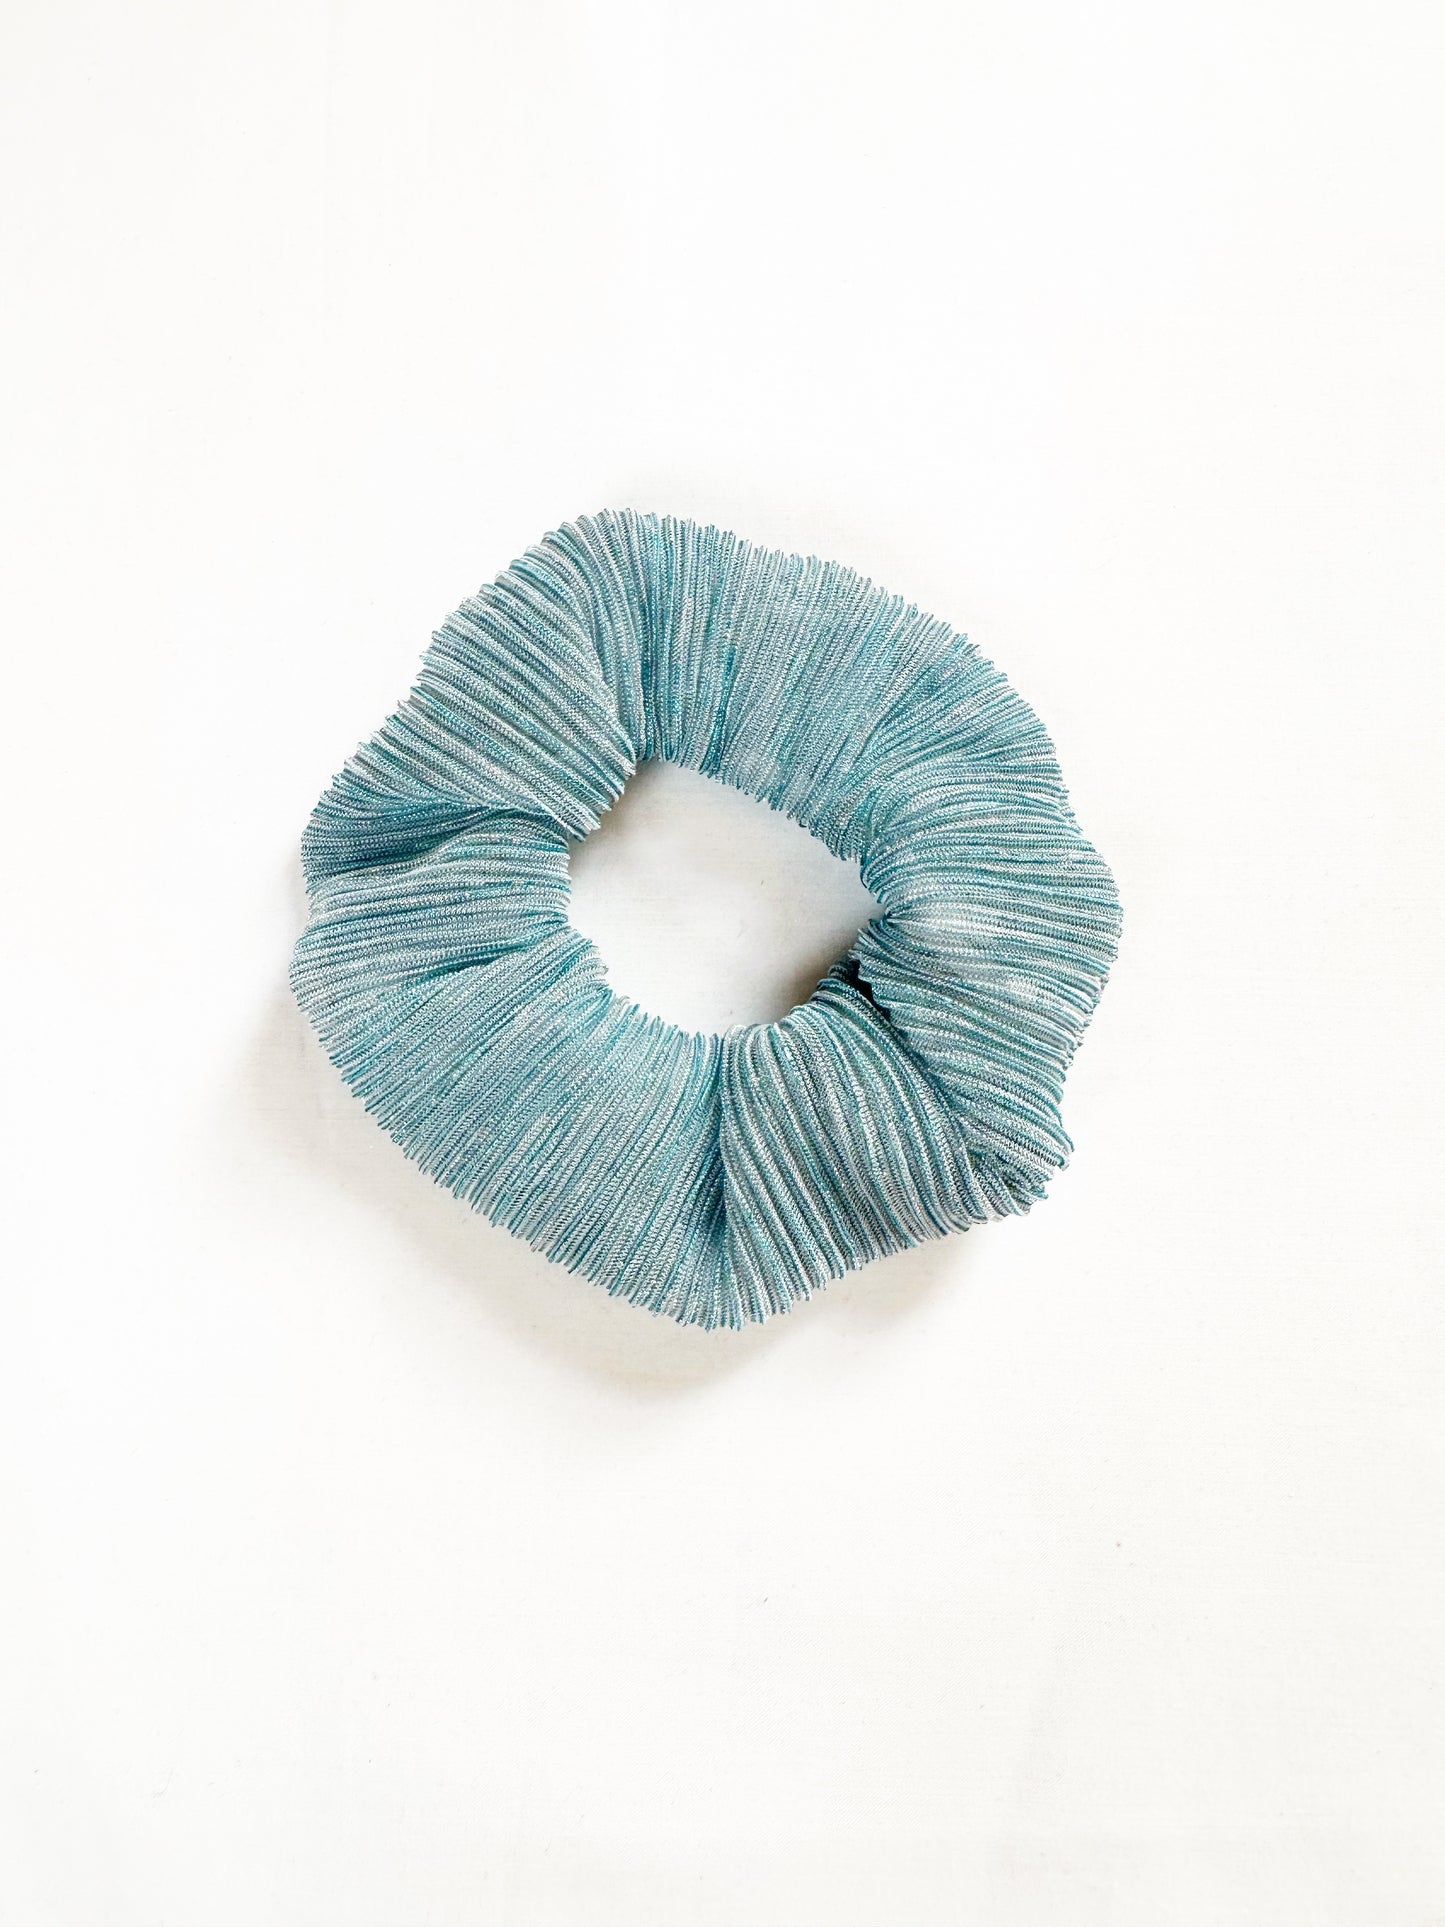 OG scrunchie in blue sparkly plissé